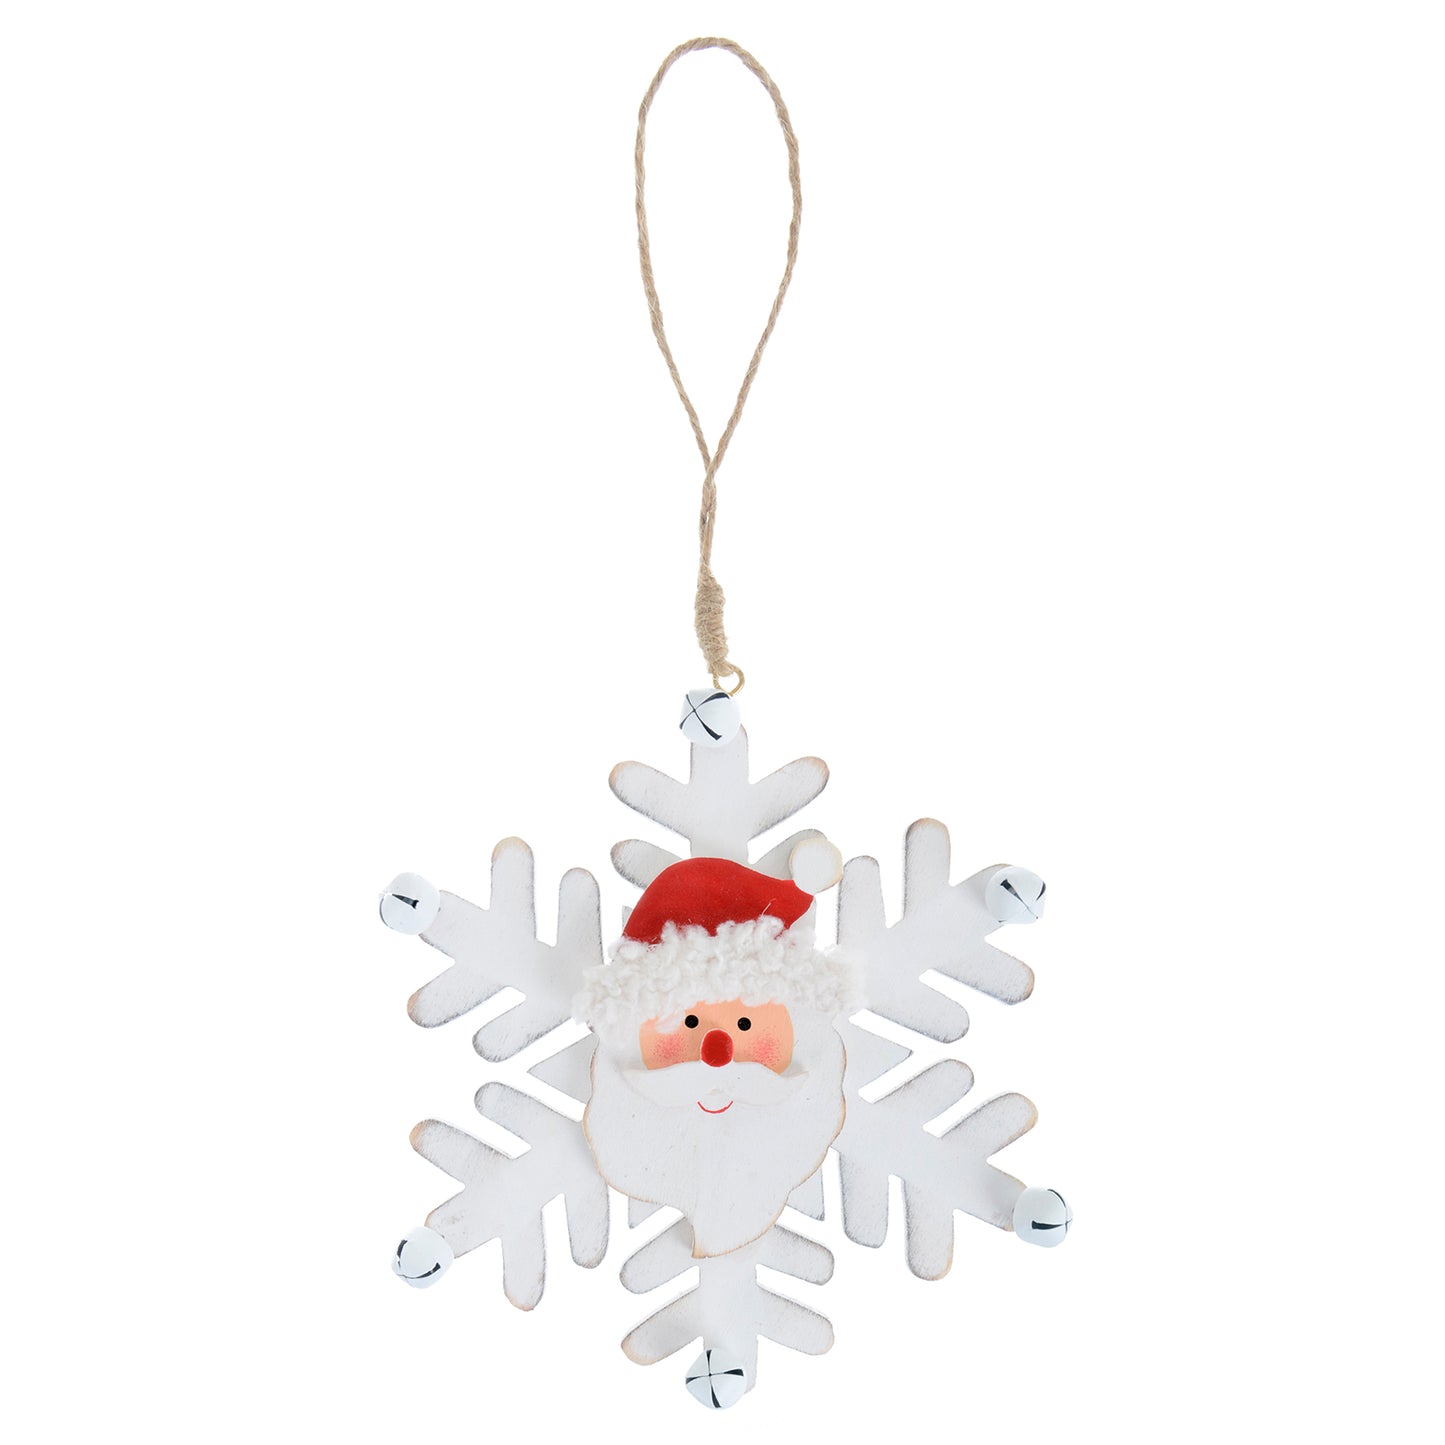 Mr Crimbo White Wooden Snowflake Shaped Tree Decorations - MrCrimbo.co.uk -XS5116 - Santa -christmas tree decorations